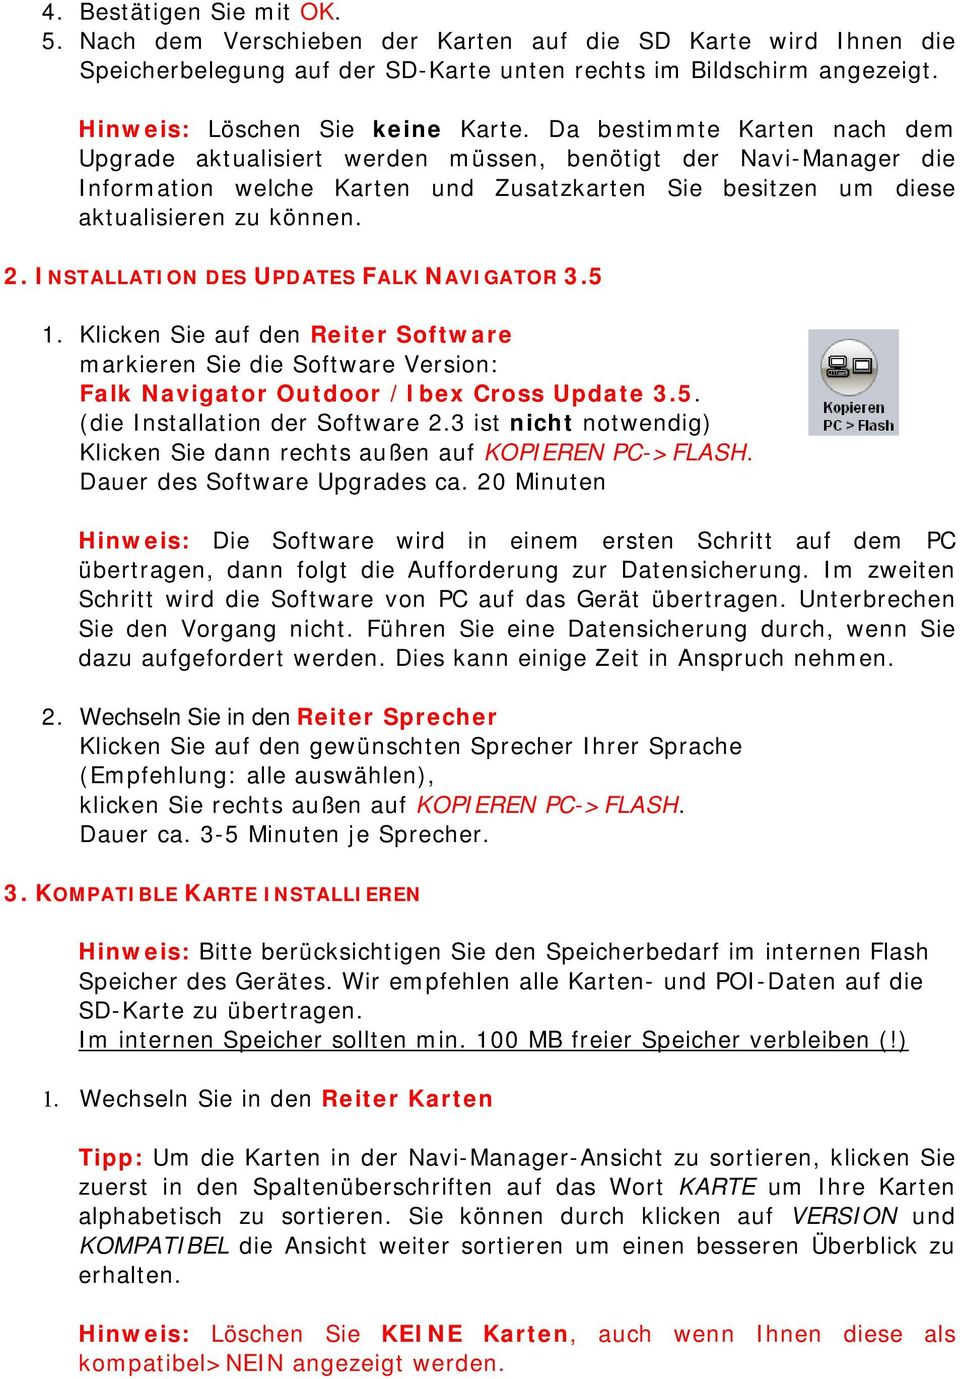 INSTALLATION DES UPDATES FALK NAVIGATOR 3.5 1. Klicken Sie auf den Reiter Software markieren Sie die Software Version: Falk Navigator Outdoor /Ibex Cross Update 3.5. (die Installation der Software 2.